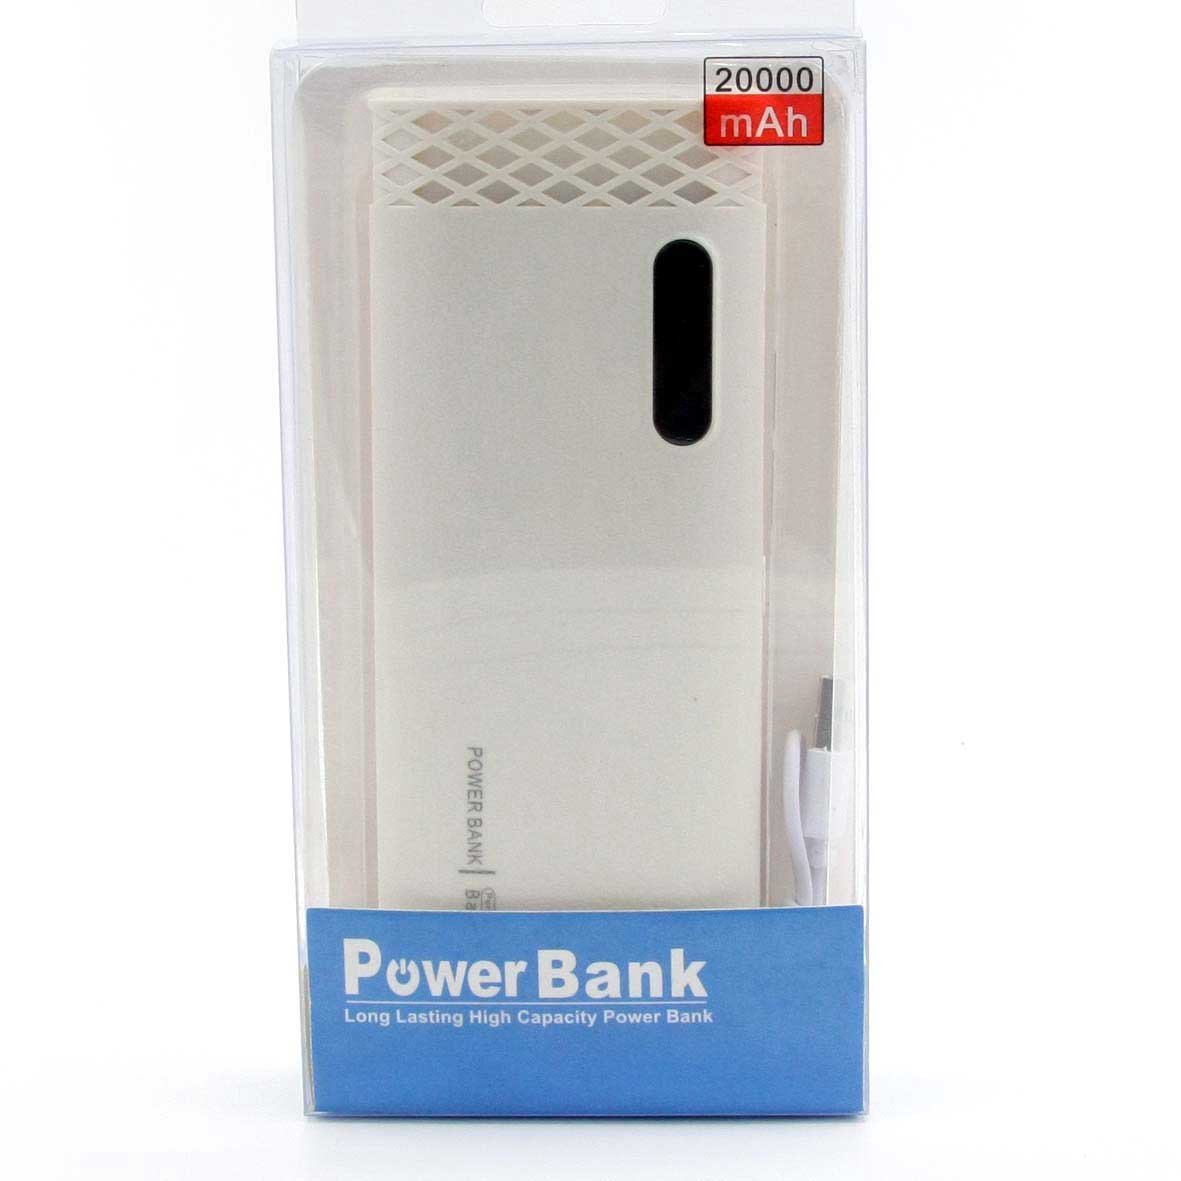 Potente Cargador portátil Power Bank 20.000 Mah para recargar cualquier dispositivo electrónico, tiene doble entrada USB y linterna